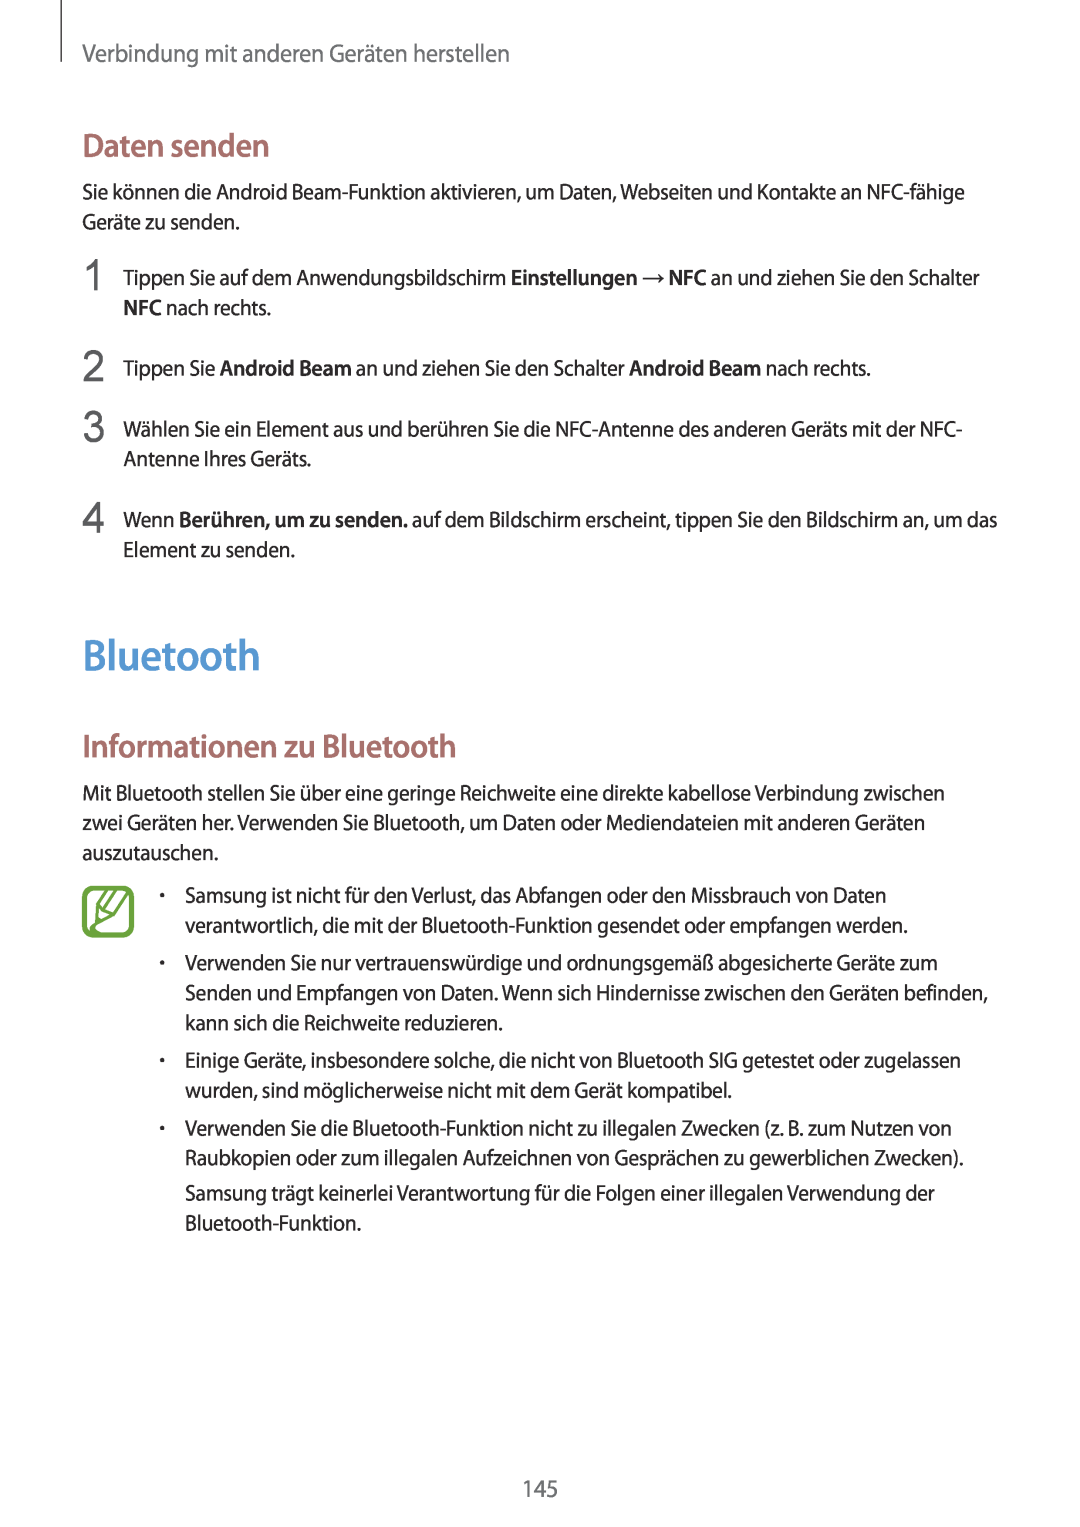 Samsung SM-G901FZBADTM manual Daten senden, Informationen zu Bluetooth, Verbindung mit anderen Geräten herstellen 